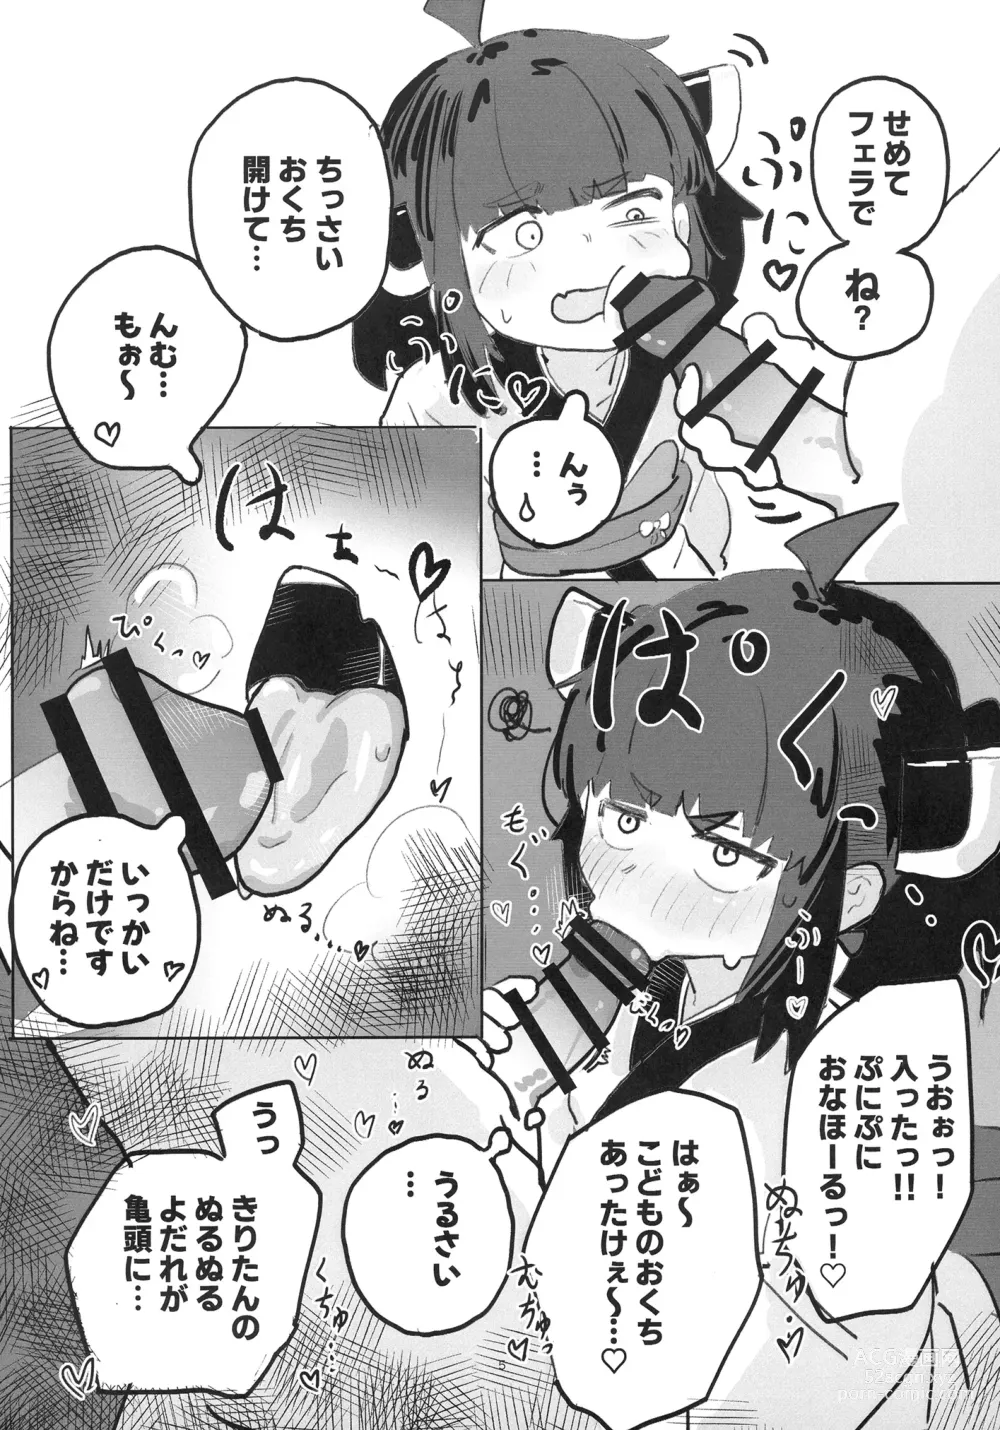 Page 5 of doujinshi Kiri tanto etchi shitai!